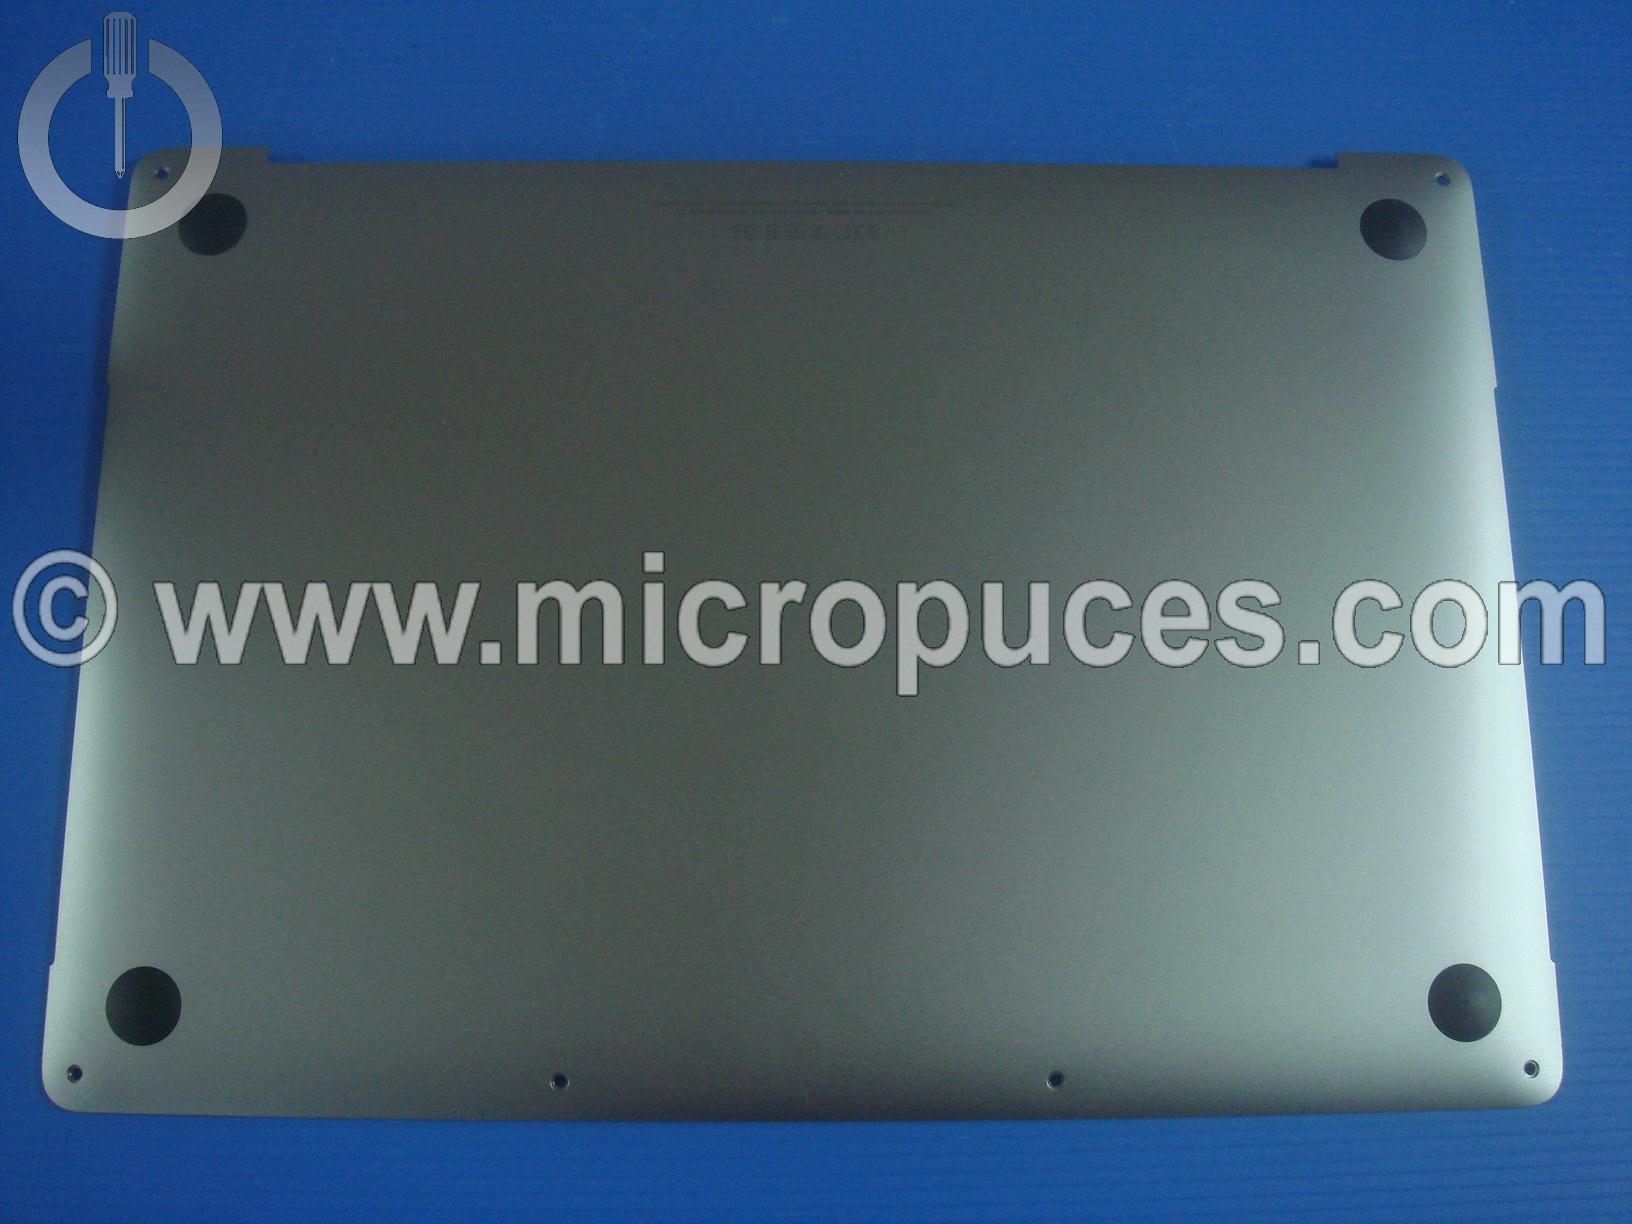 Coque infrieure pour Macbook Pro A1706 gris sidral